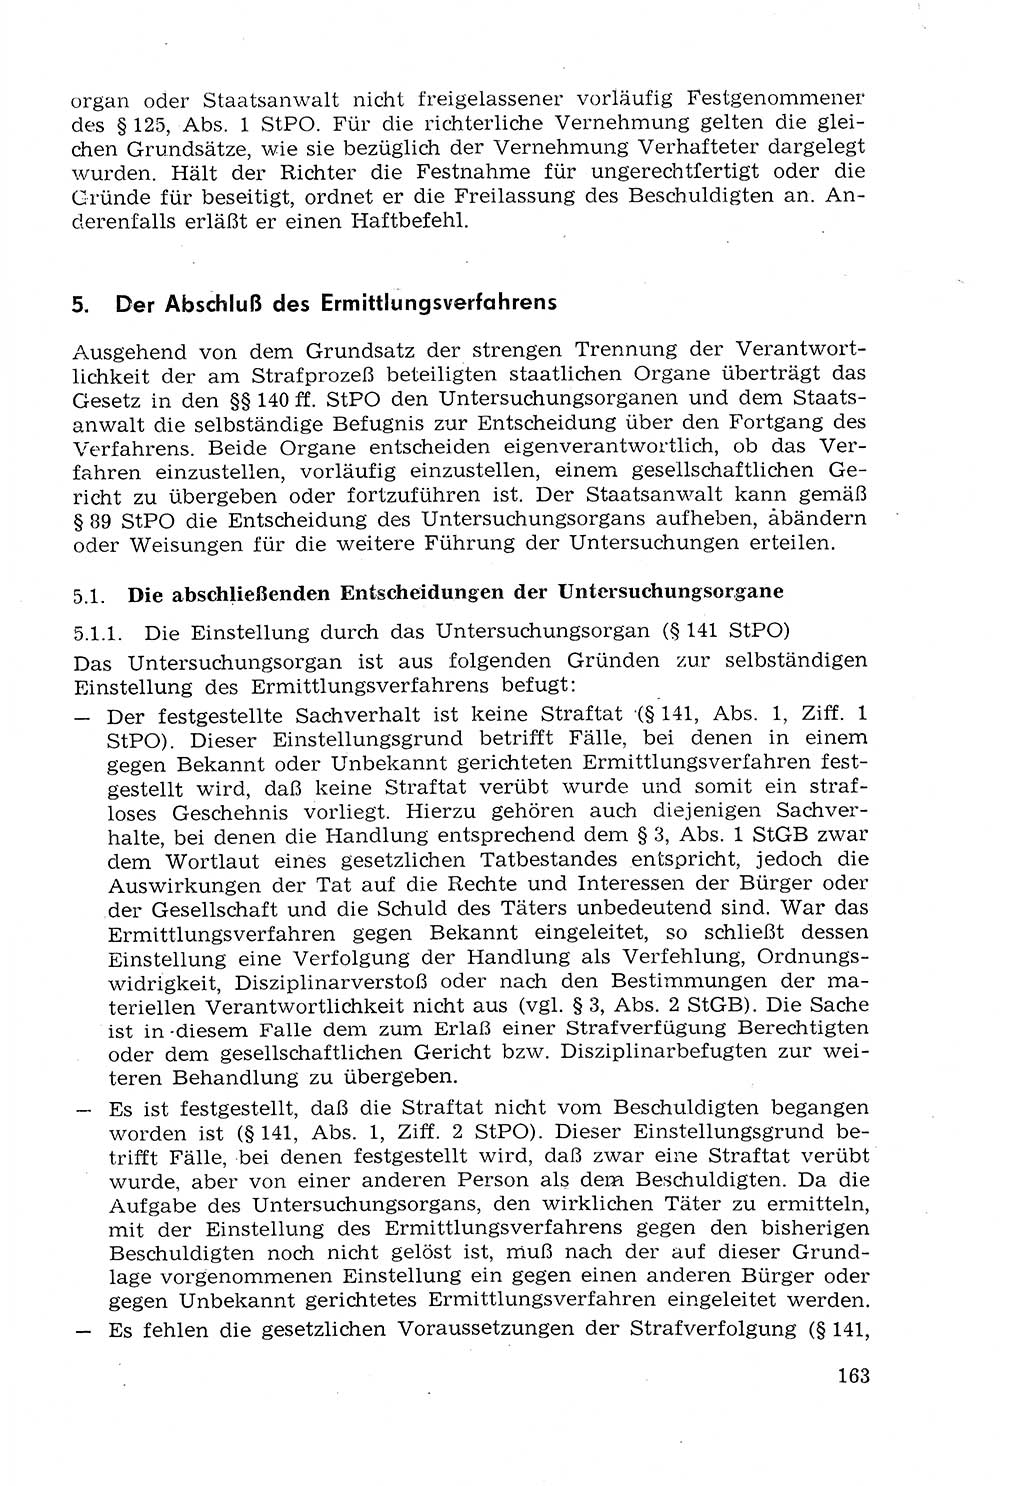 Strafprozeßrecht der DDR (Deutsche Demokratische Republik), Lehrmaterial 1969, Seite 163 (Strafprozeßr. DDR Lehrmat. 1969, S. 163)